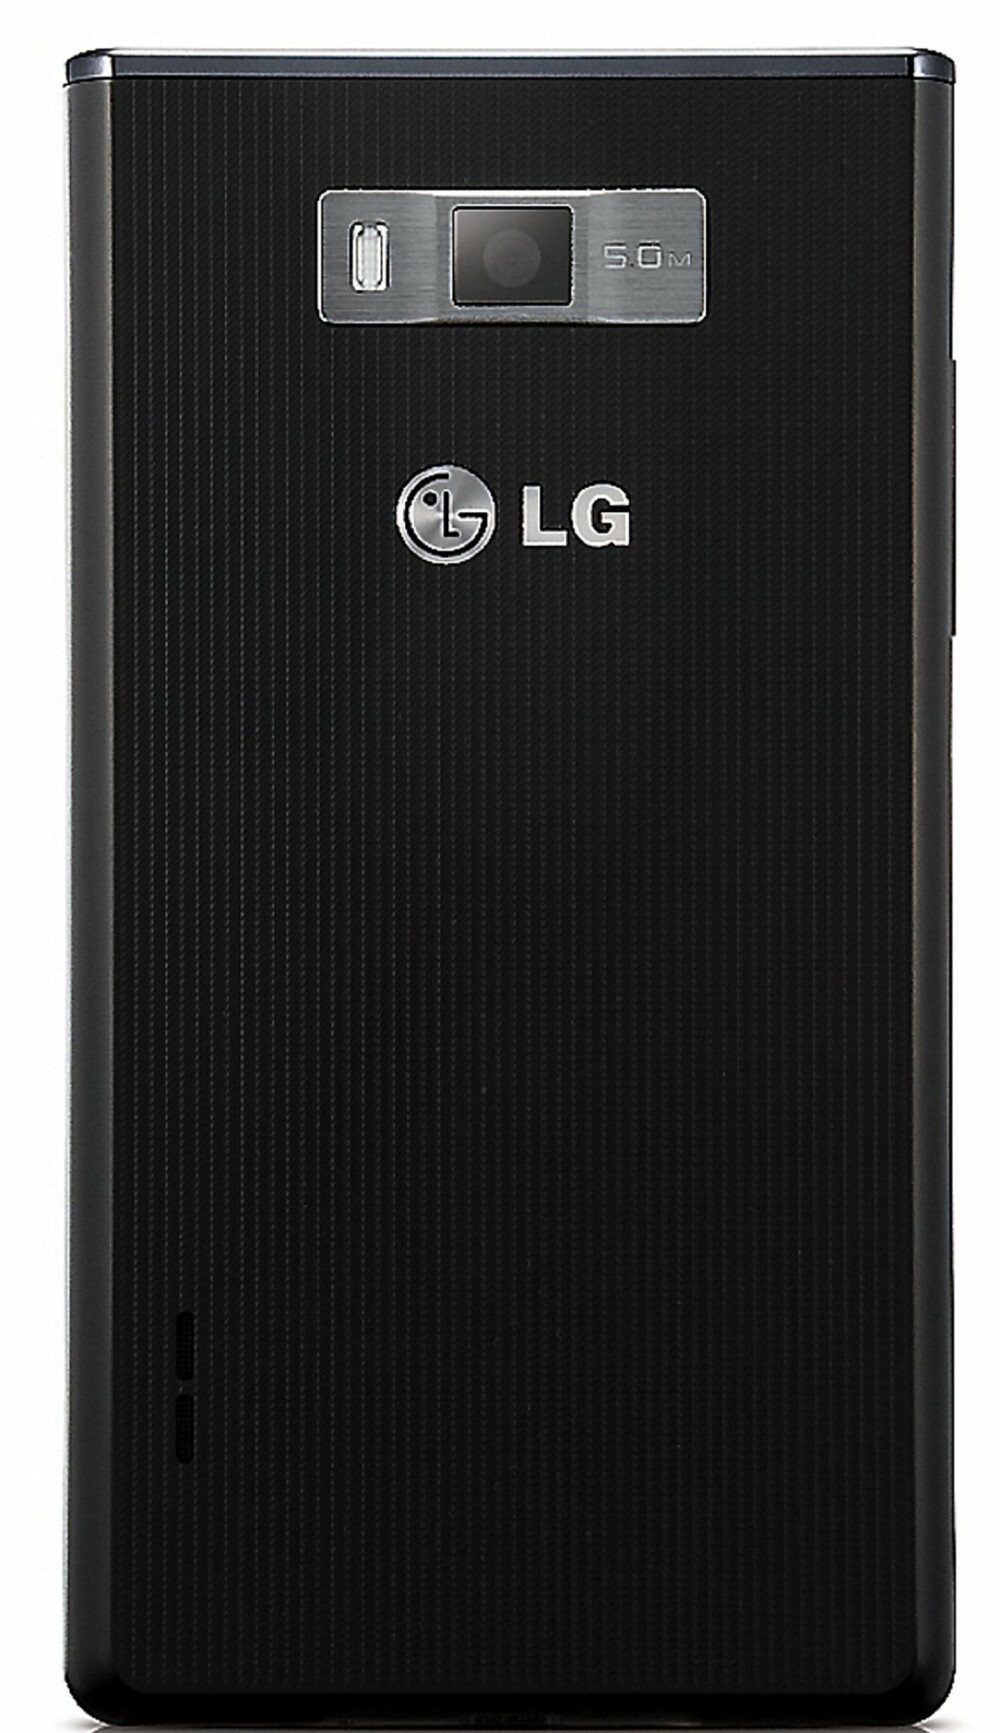 MØNSTER: LG Optimus L7 har i typisk LG-stil et bakstykke med mønster.